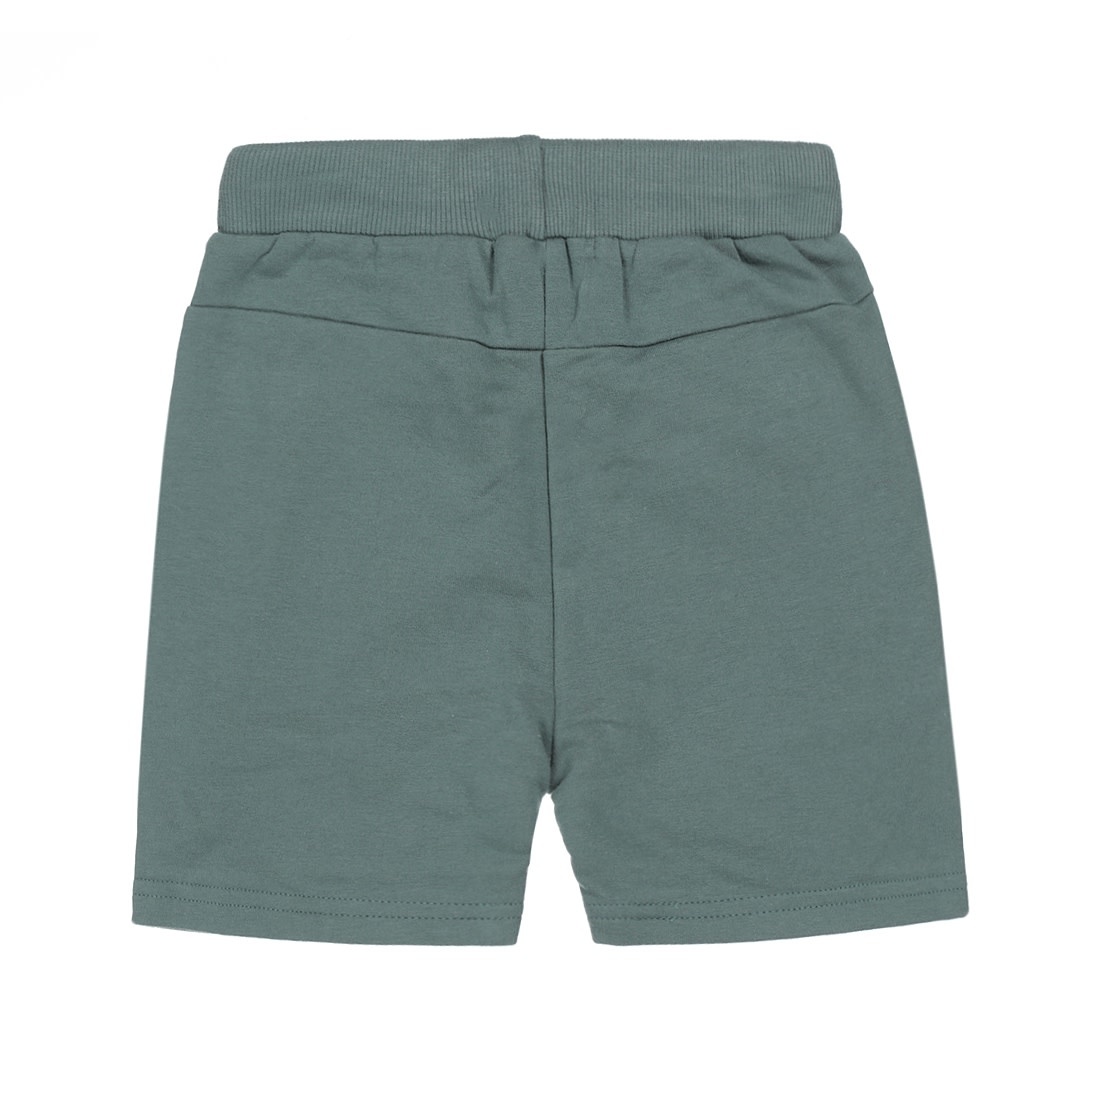 Green Jogger Shorts